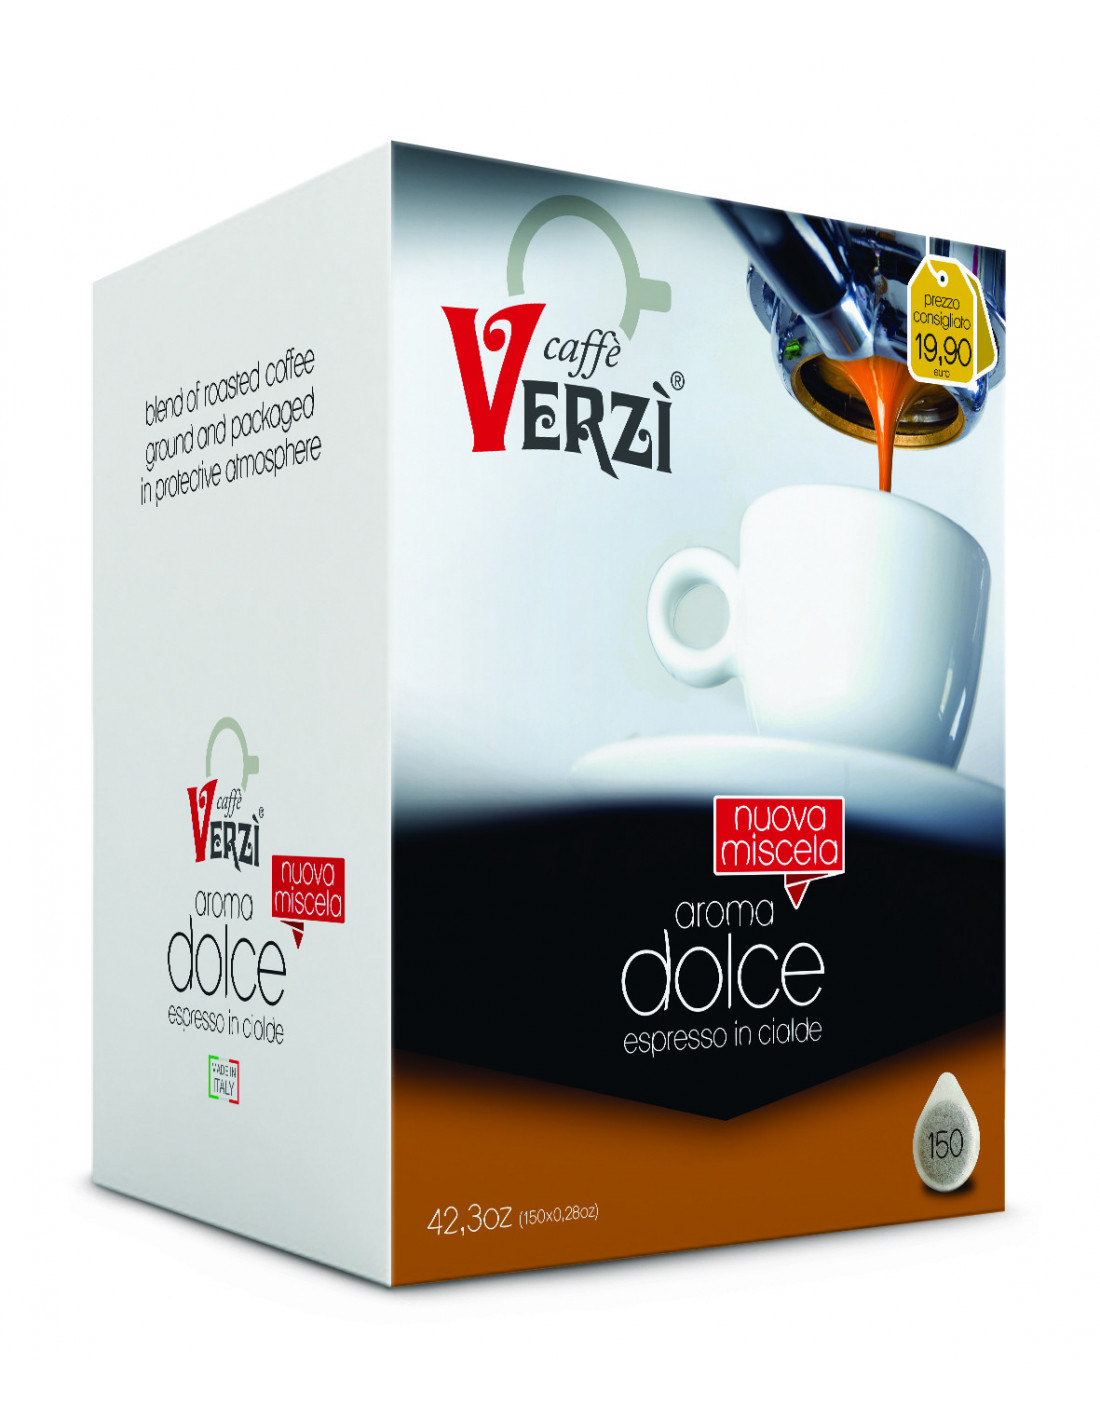 Caffè Verzi - 50 capsule Nescafe Dolce Gusto AROMA RICCO in offerta